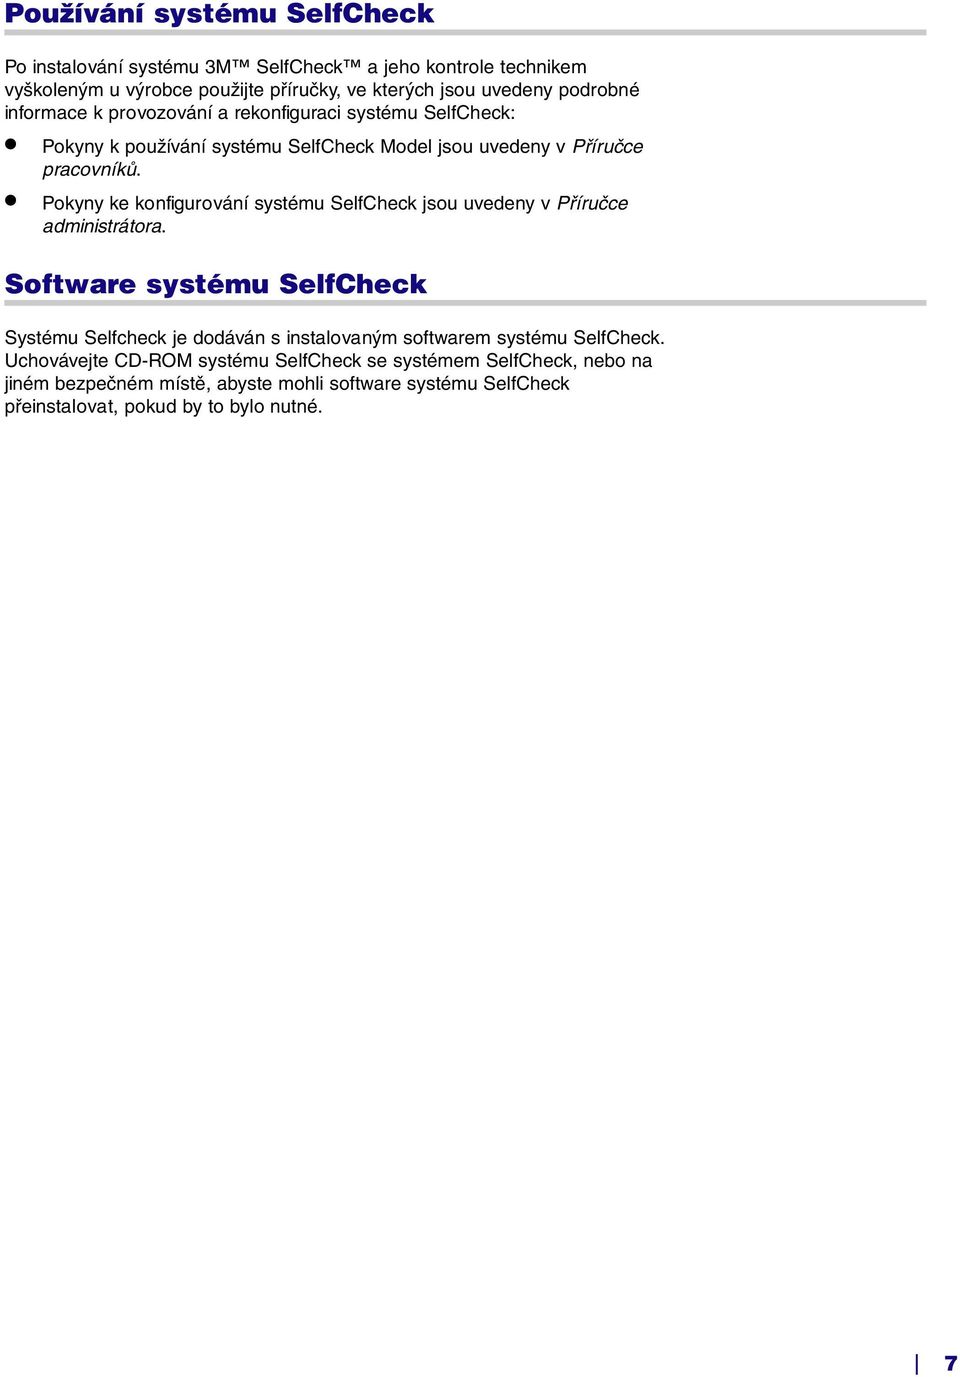 Pokyny ke konfigurování systému SelfCheck jsou uvedeny v Příručce administrátora.